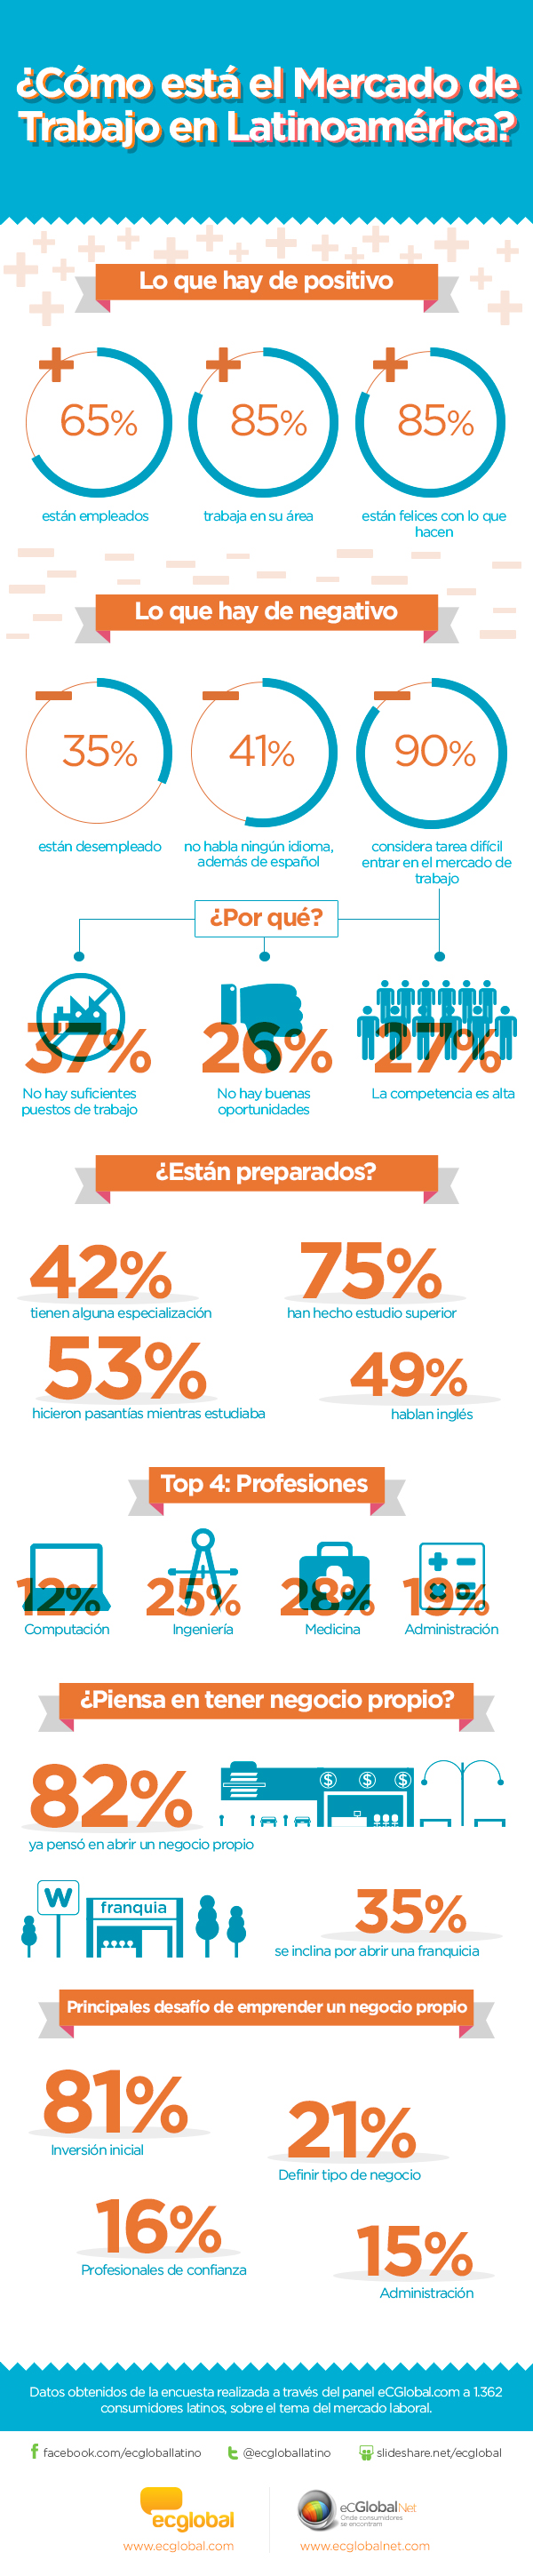 mercado de trabajo latinoamerica